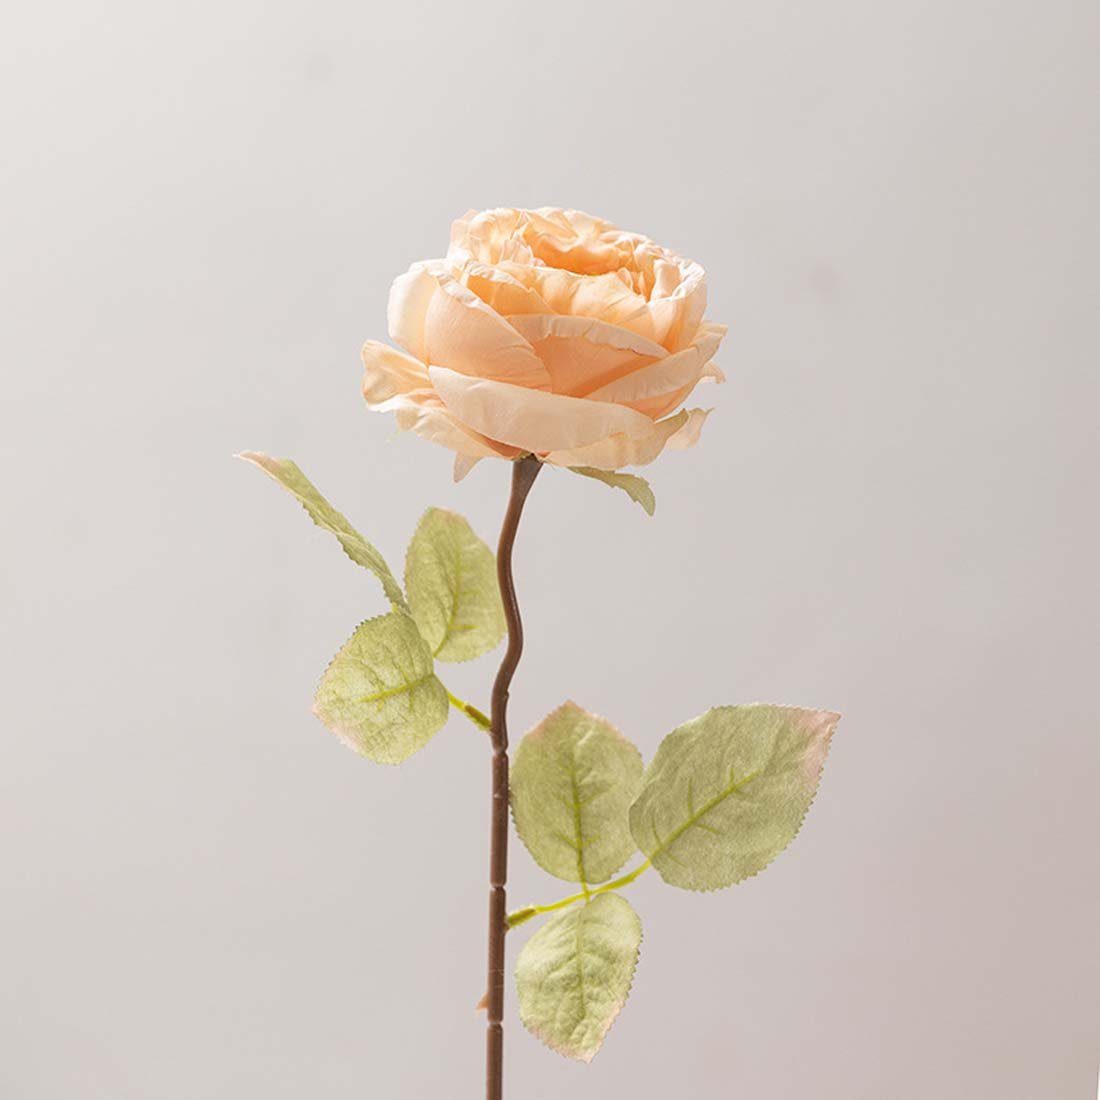 Röstrandrosen mit Kunstblumen, künstliche Rayon-Rosenstrauß, Hochzeitssträuße, FIDDY, Kunstpflanze Rosen, gebackenen Rosen, Hochzeitsstrauß